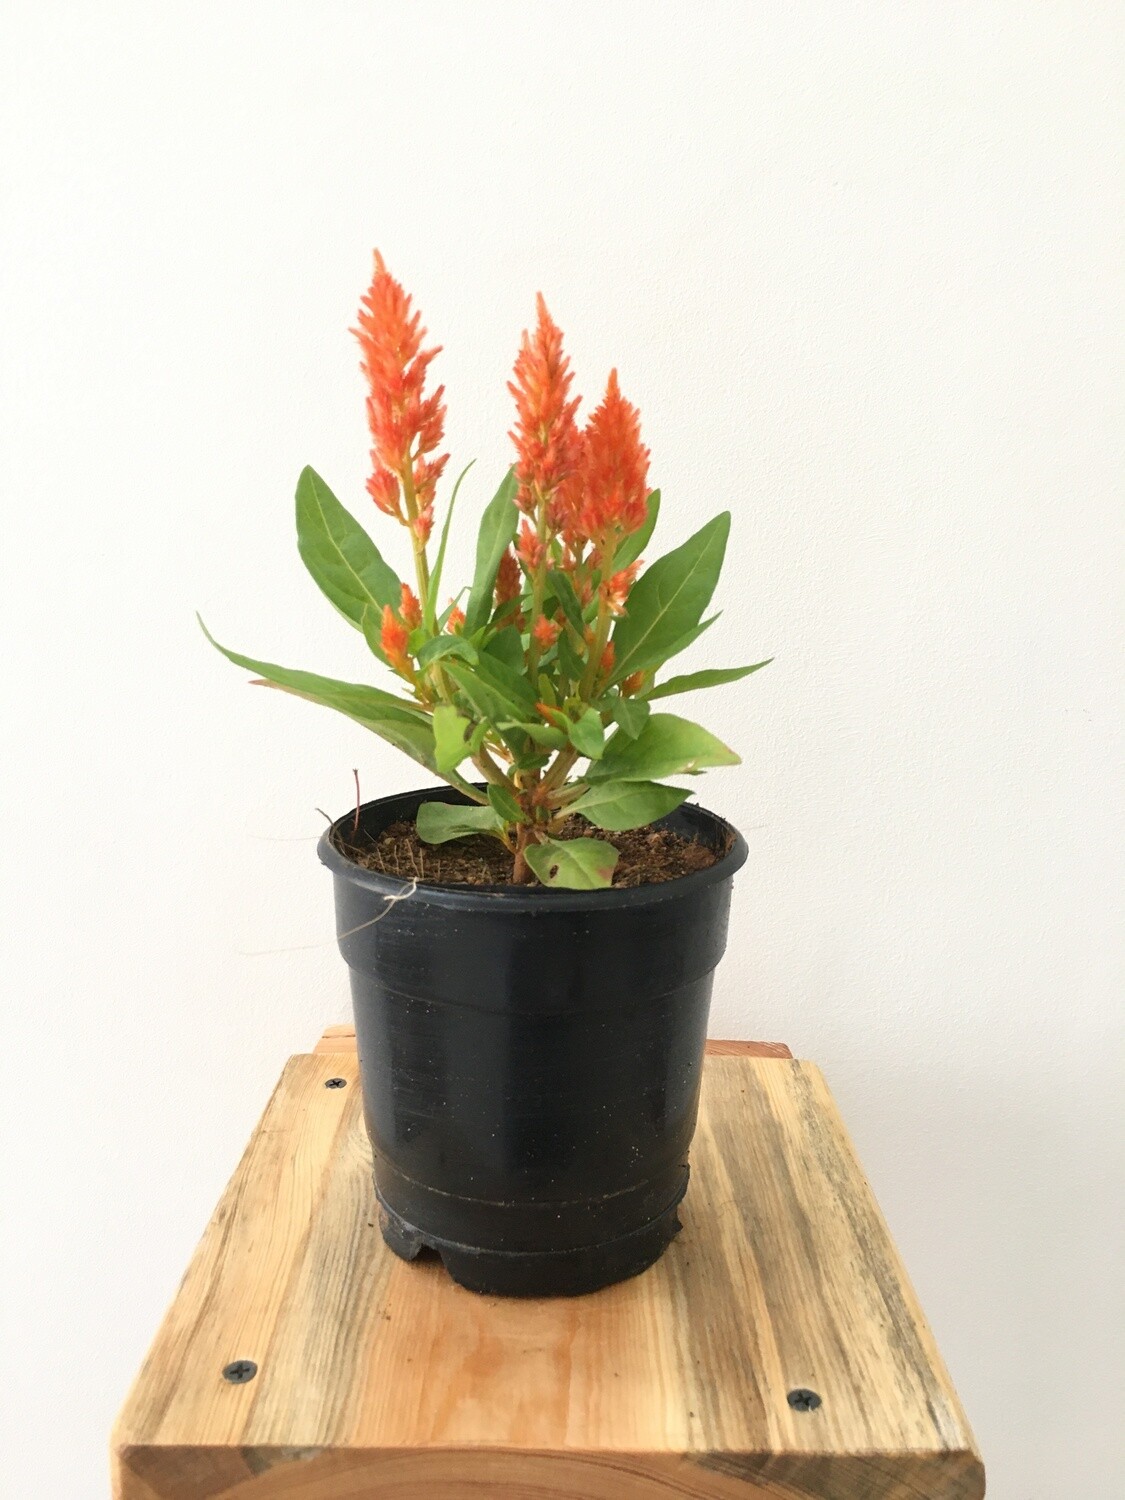 Celosia Orange Plant in 4 inches Nursery Pot